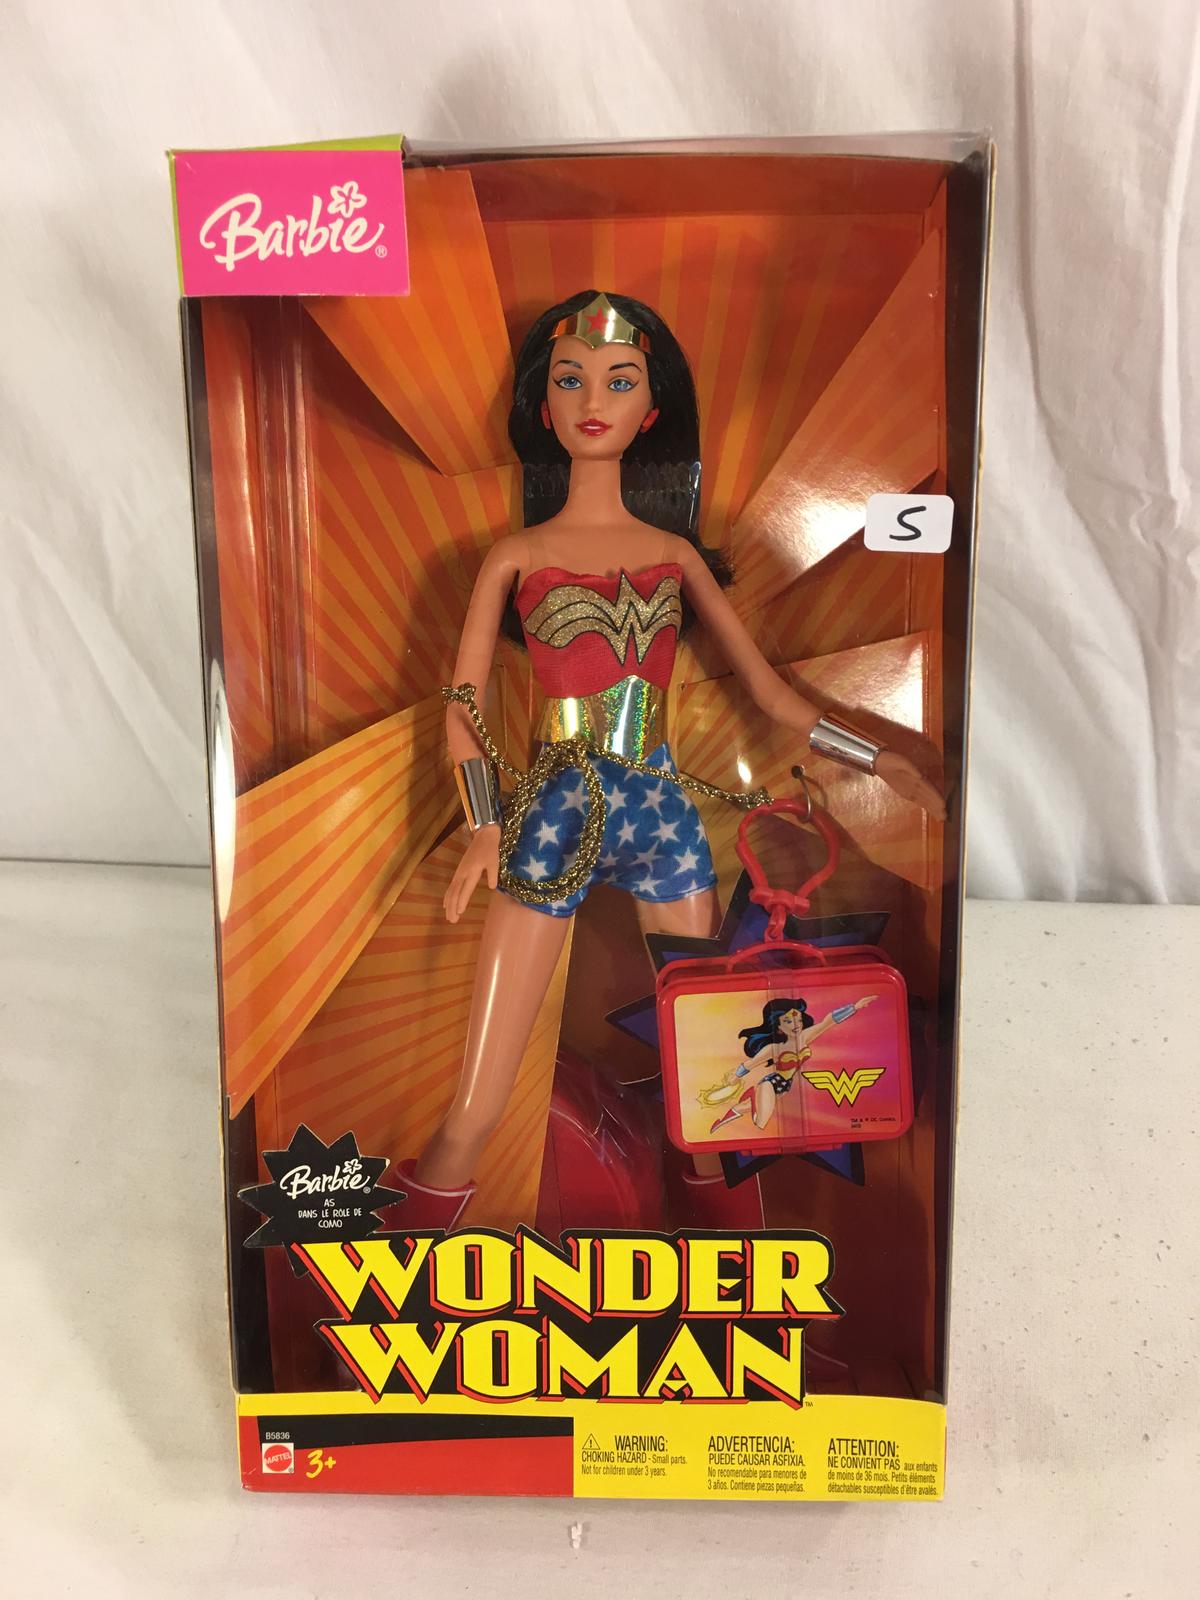 Collector NIB Barbie Mattel Wonder Woman Barbie Mattel Dol 13"Tall Box